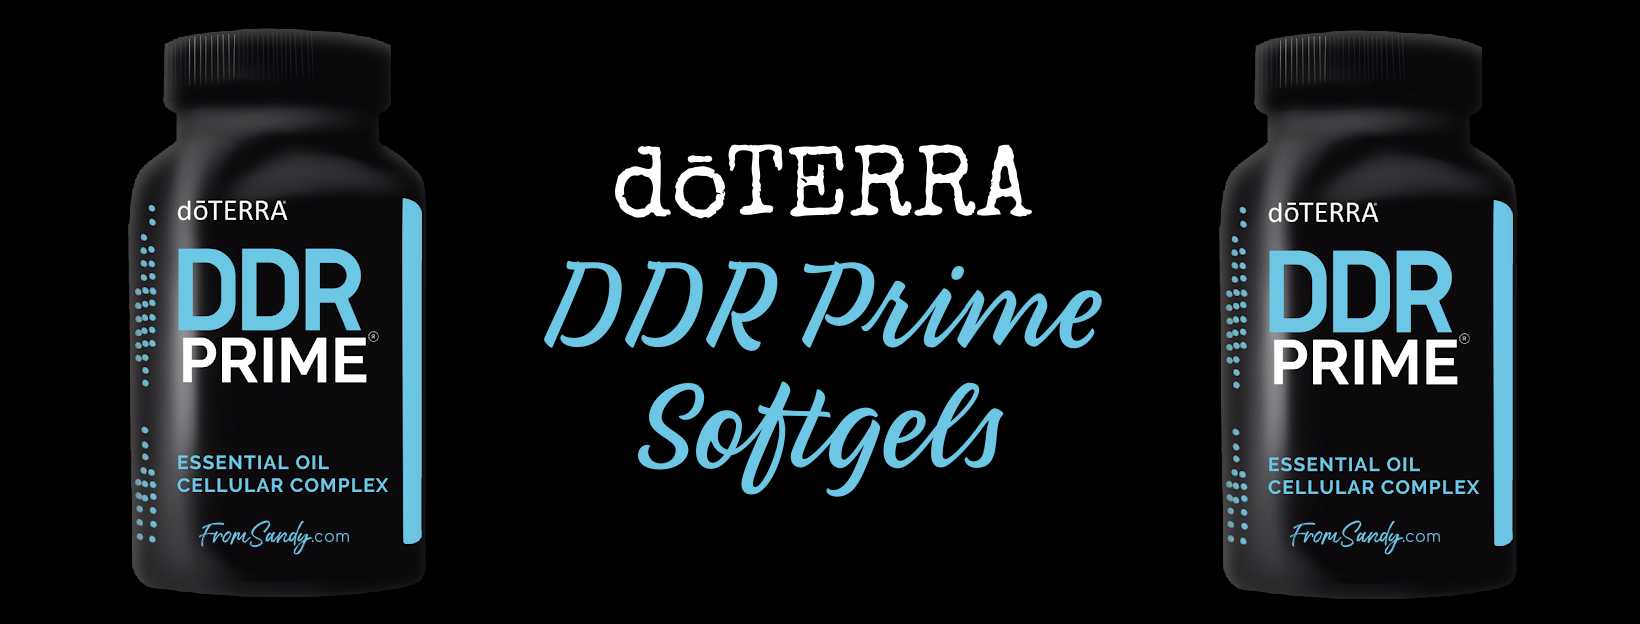 dōTERRA DDR Prime Softgels | From Sandy